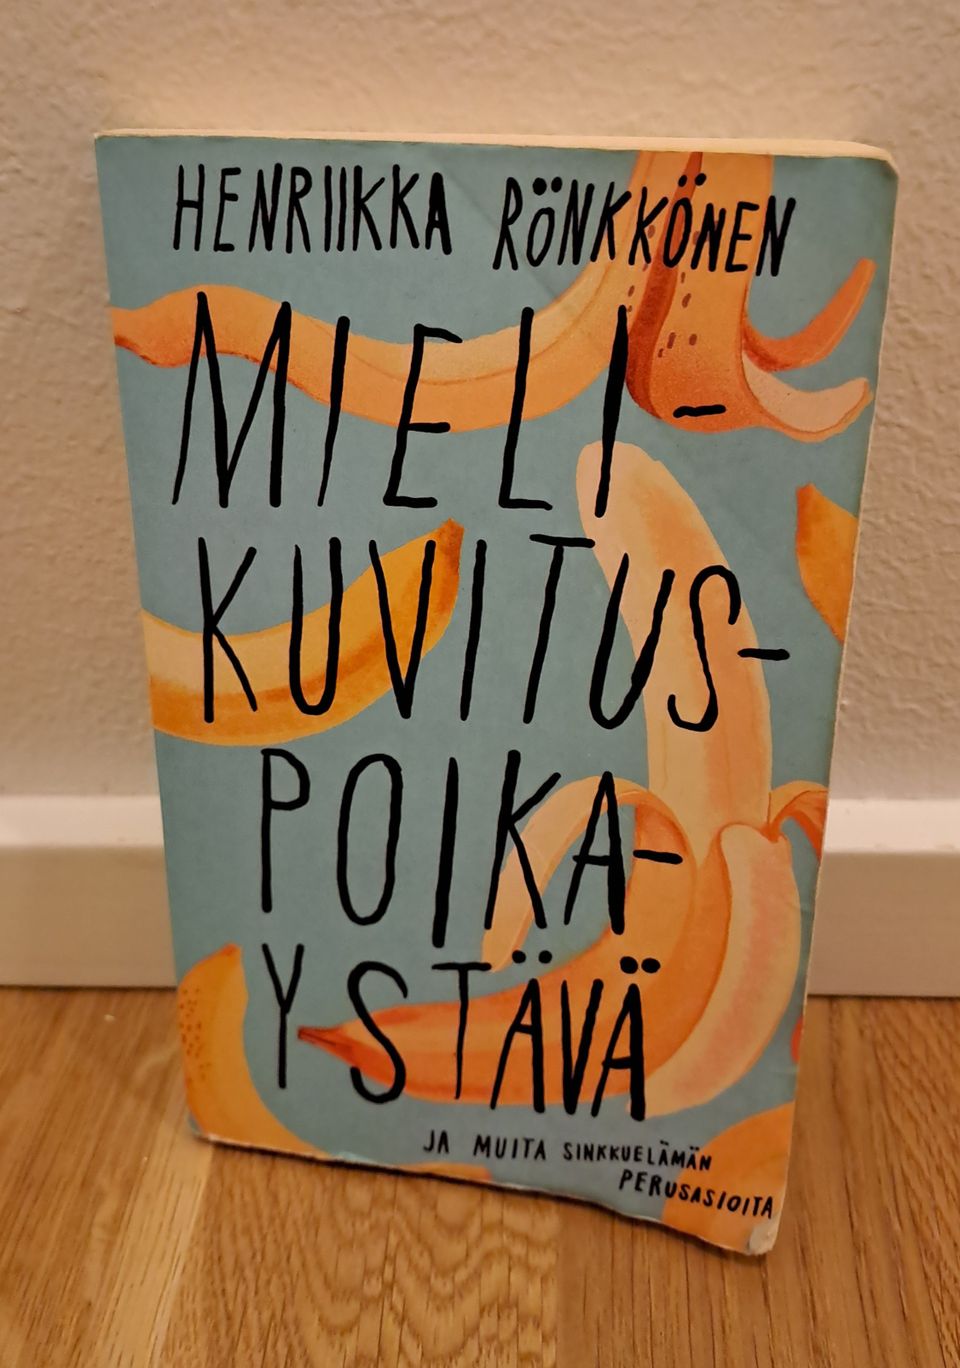 Henriikka Rönkkönen: Mielikuvitus poikaystävä